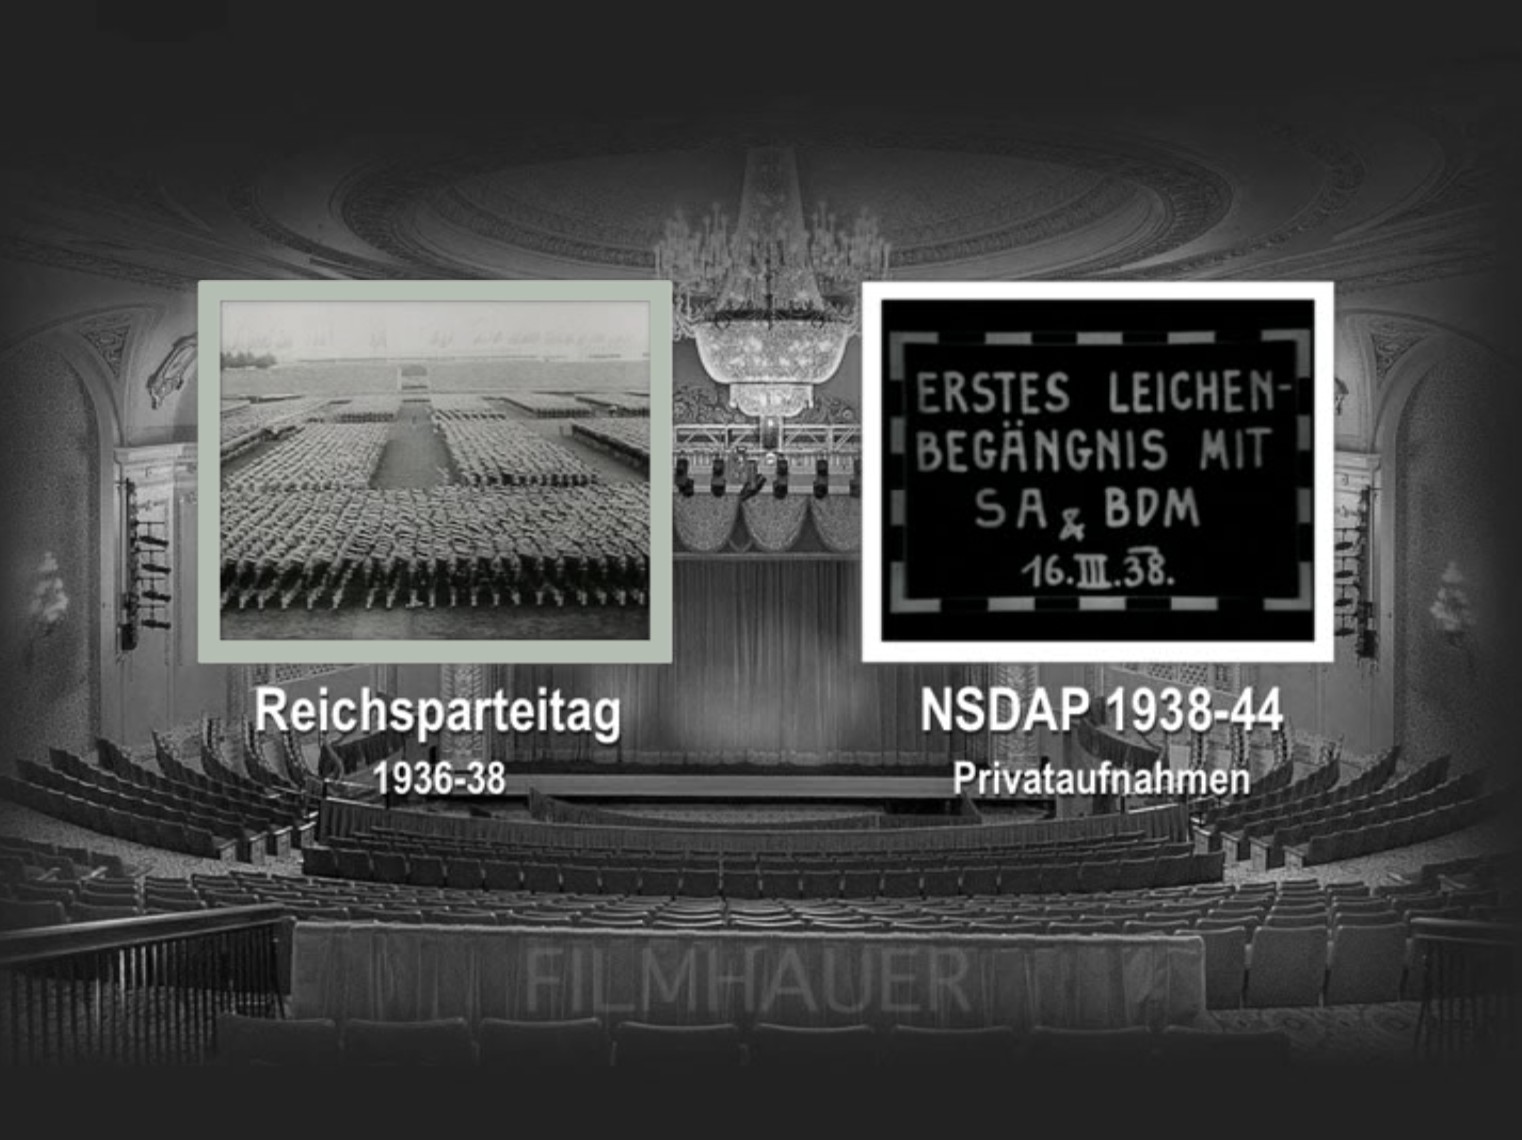 REICHSPARTEITAG 1936-38 - NSDAP PRIVATAUFNAHMEN 1938-44